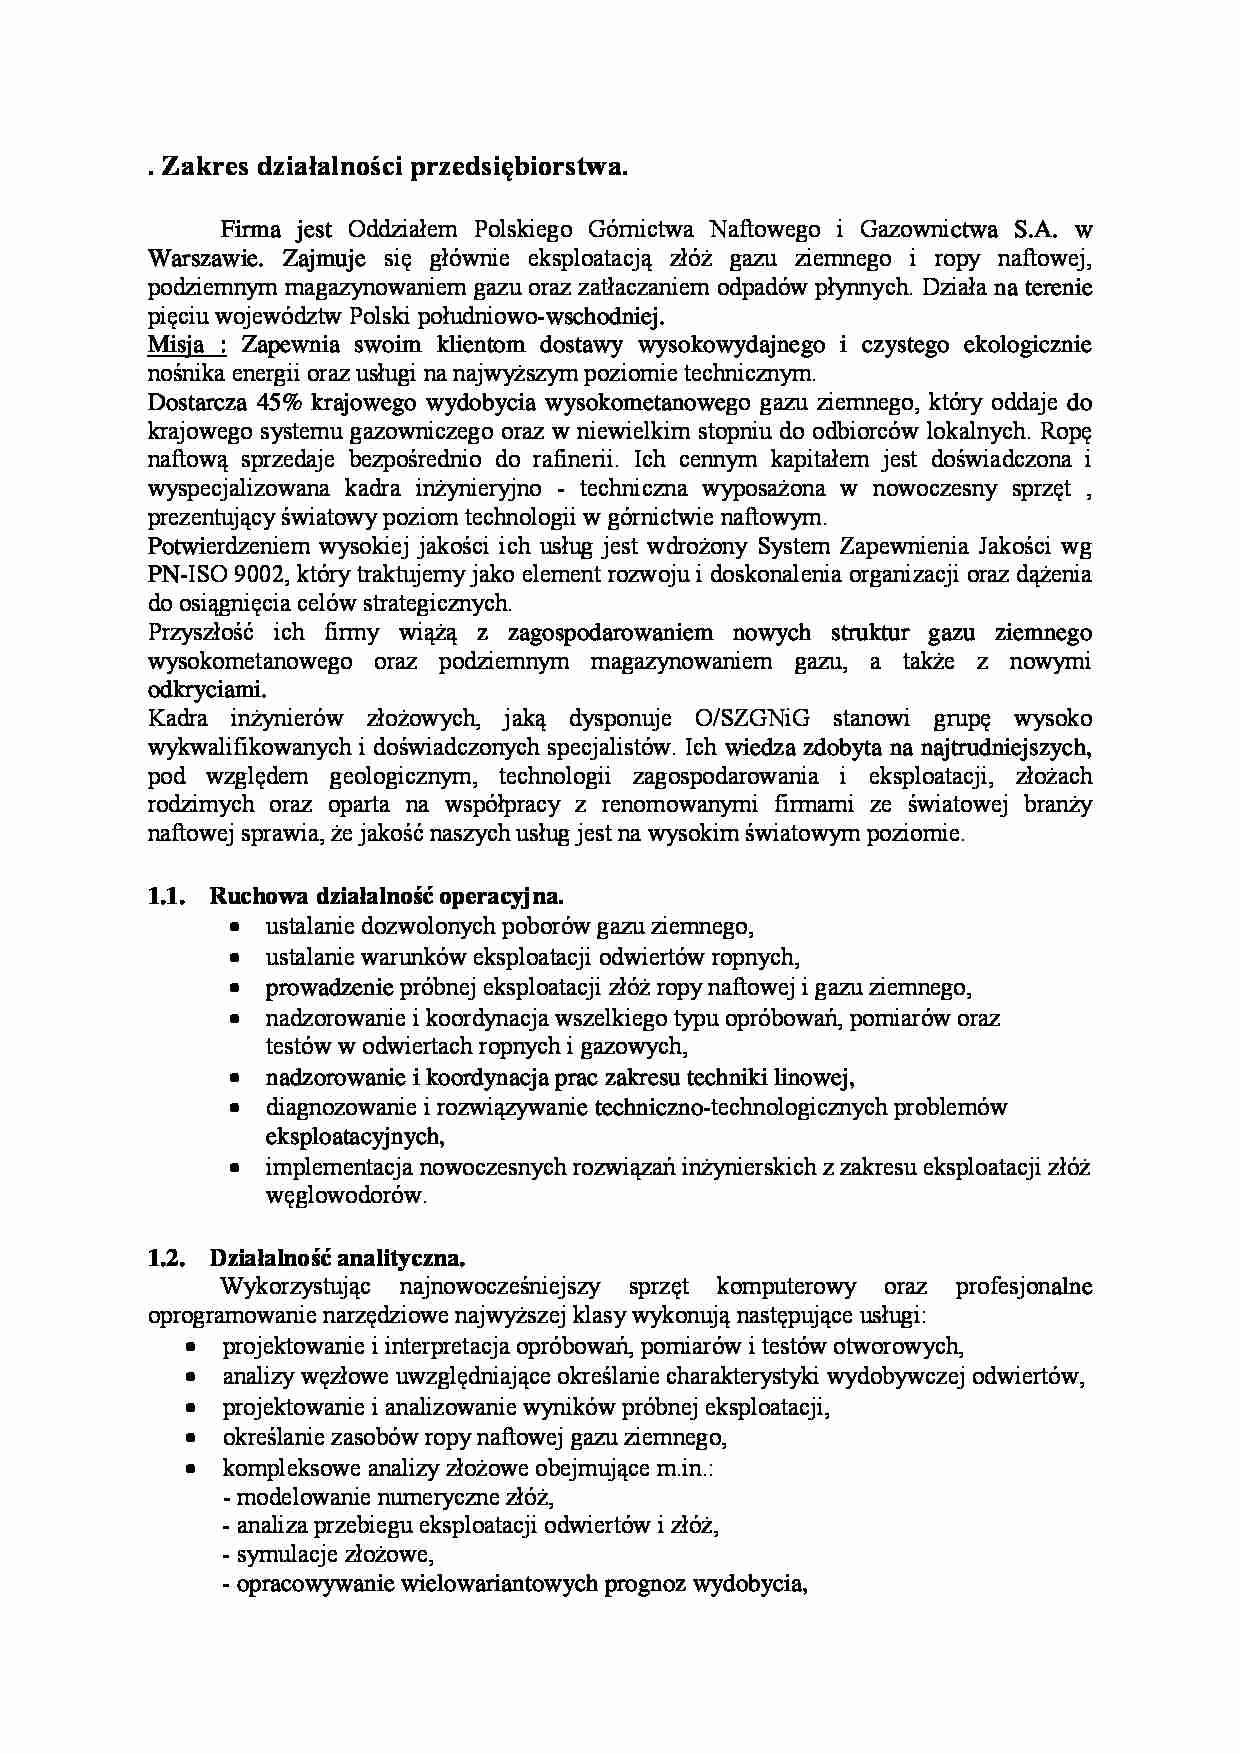 Zakres działalności Oddziału Polskiego Górnictwa Naftowego i Gazownictwa S.A. - strona 1